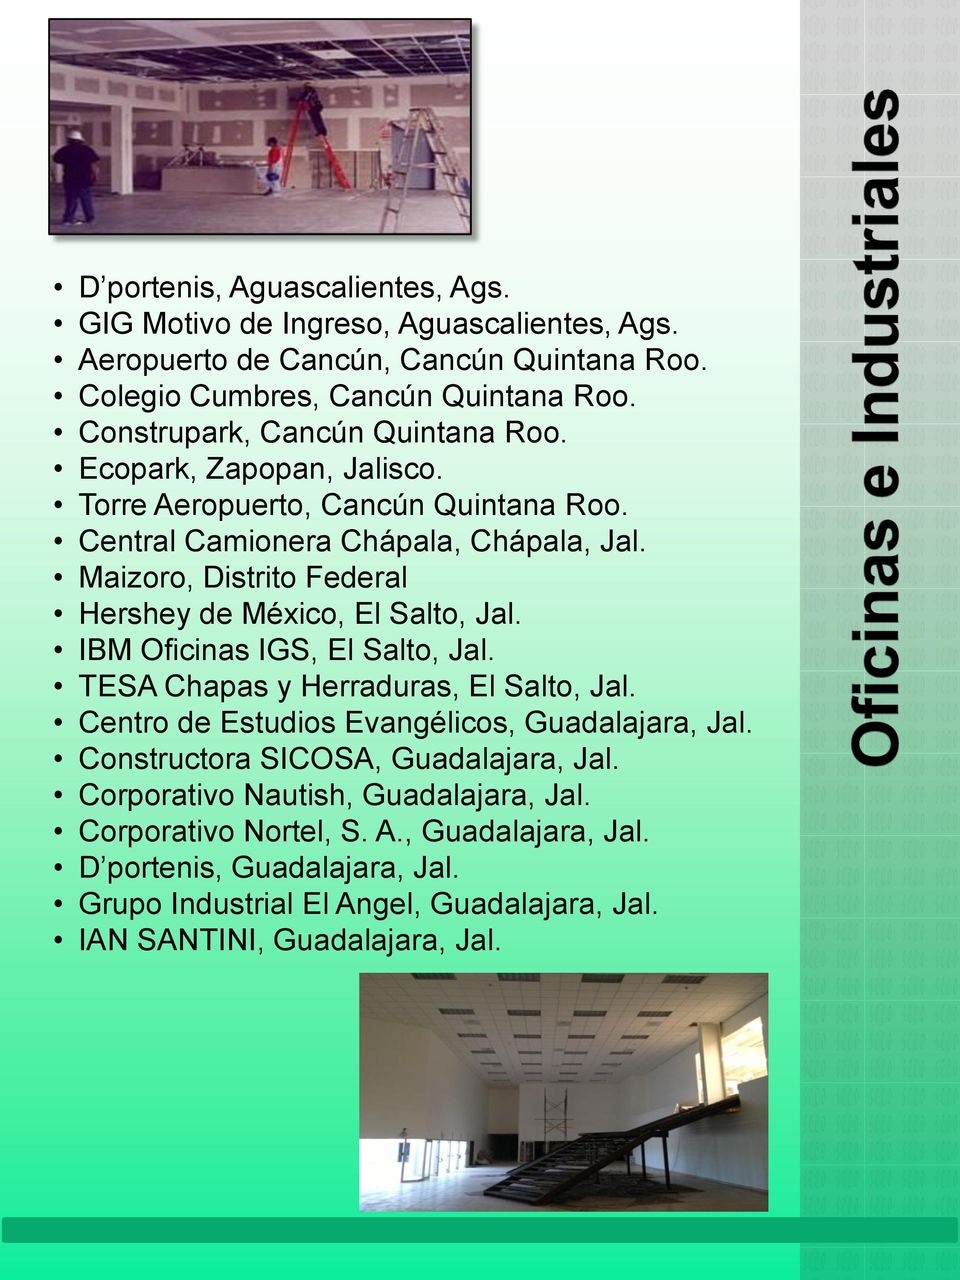 Maizoro, Distrito Federal Hershey de México, El Salto, Jal. IBM Oficinas IGS, El Salto, Jal. TESA Chapas y Herraduras, El Salto, Jal.